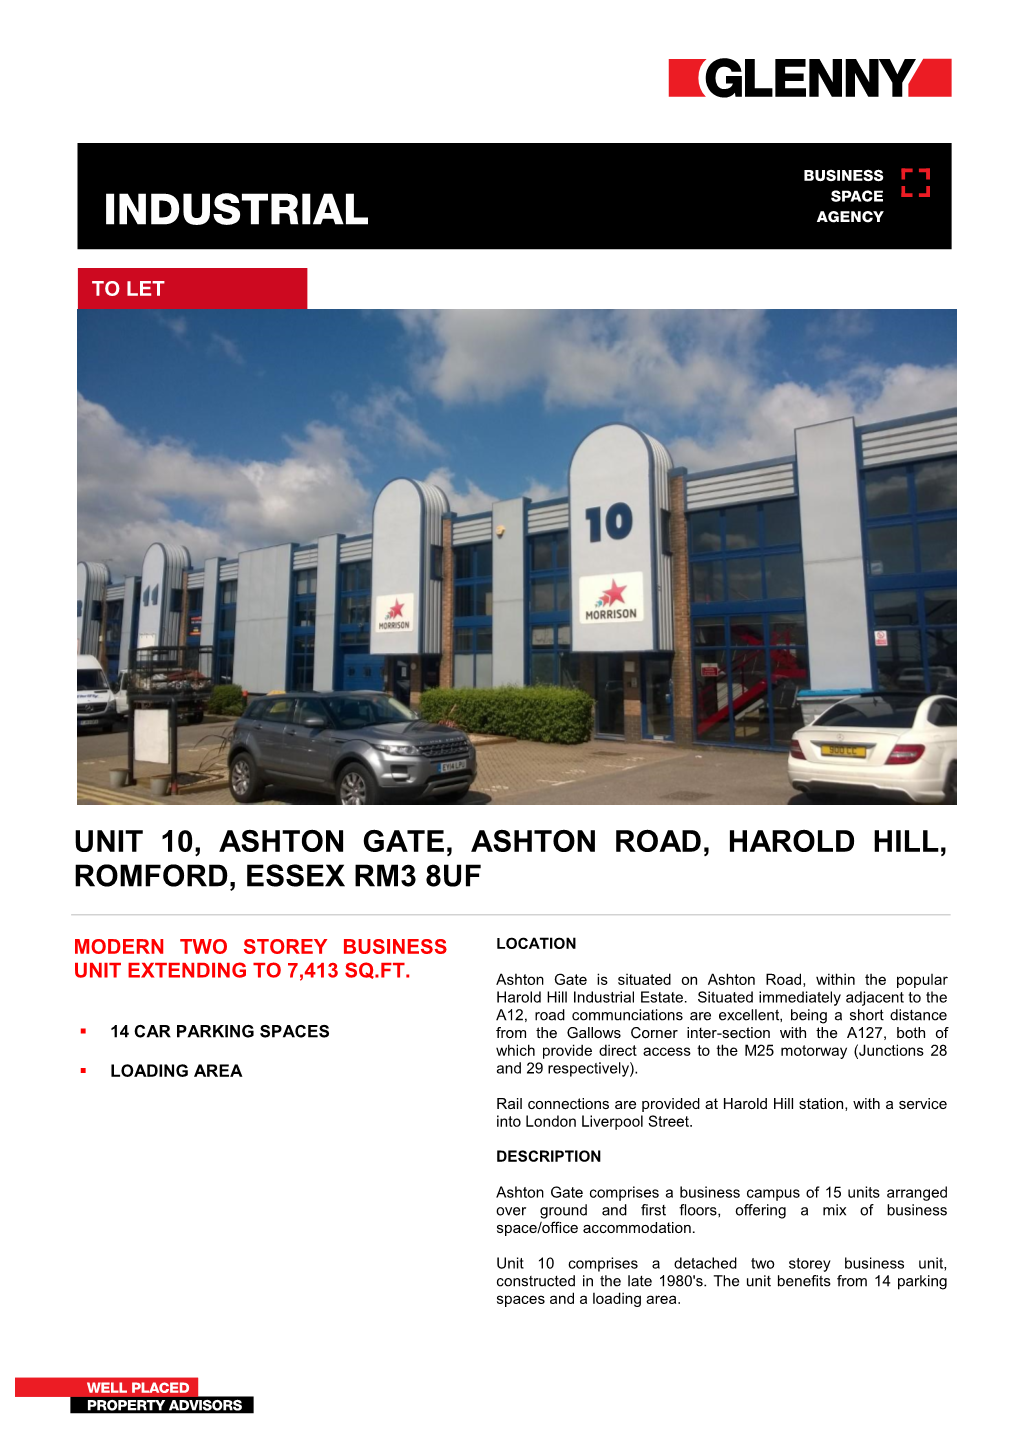 Unit 10, Ashton Gate, Ashton Road, Harold Hill, Romford, Essex Rm3 8Uf